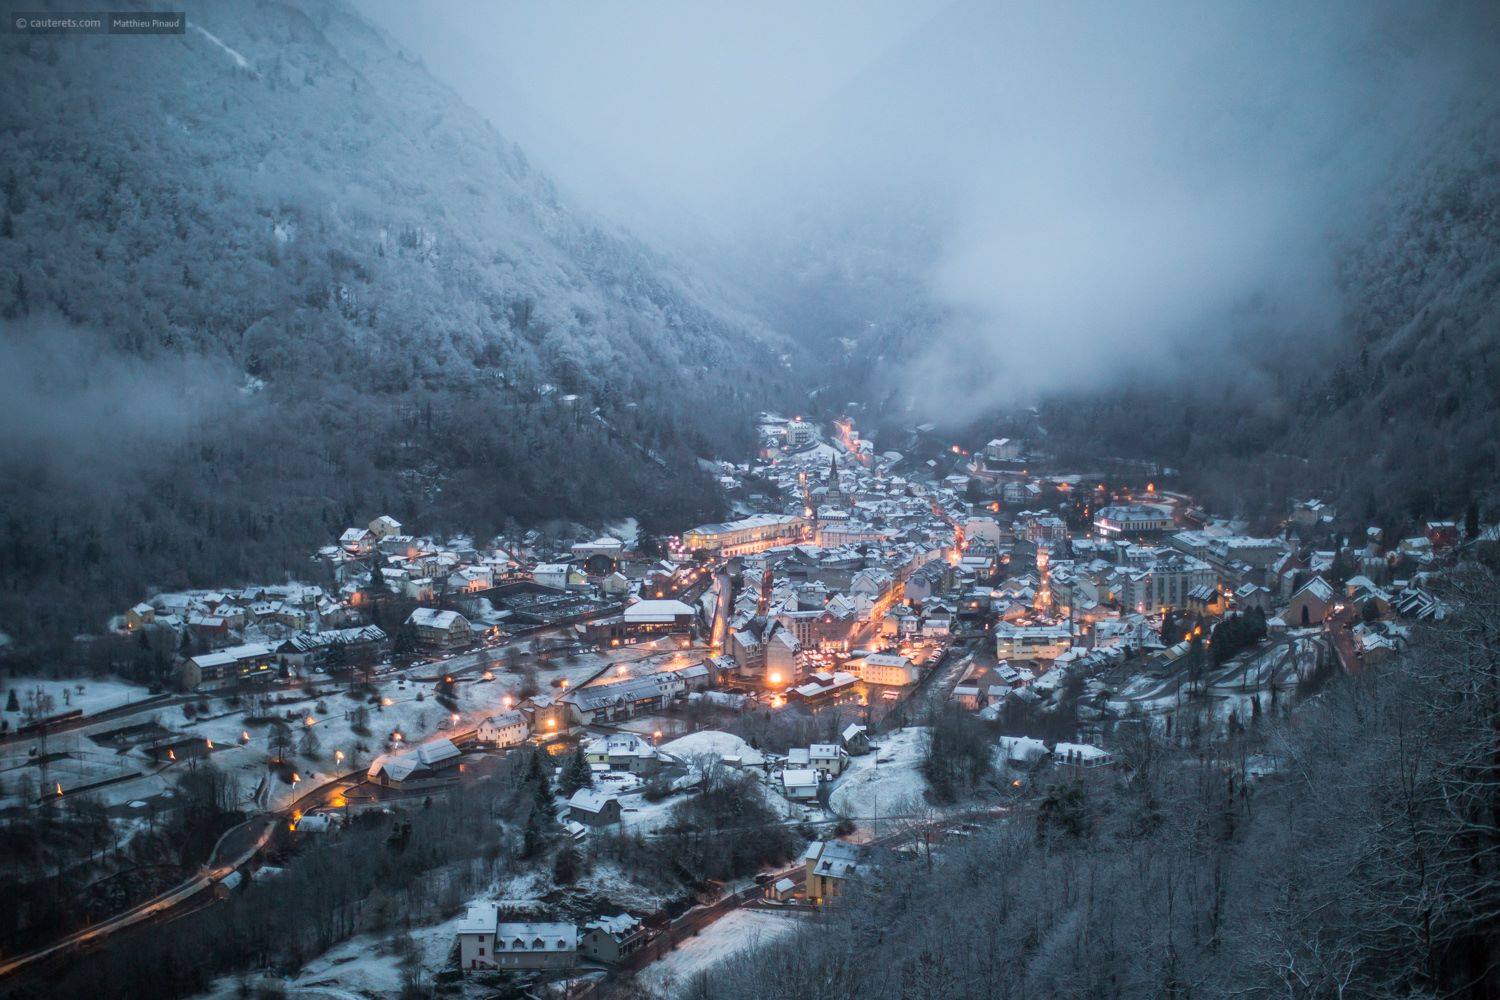 Las recientes nevadas han cambiado radicalmente el panorama en el Pirineo francés. Foto: Village Cauterets